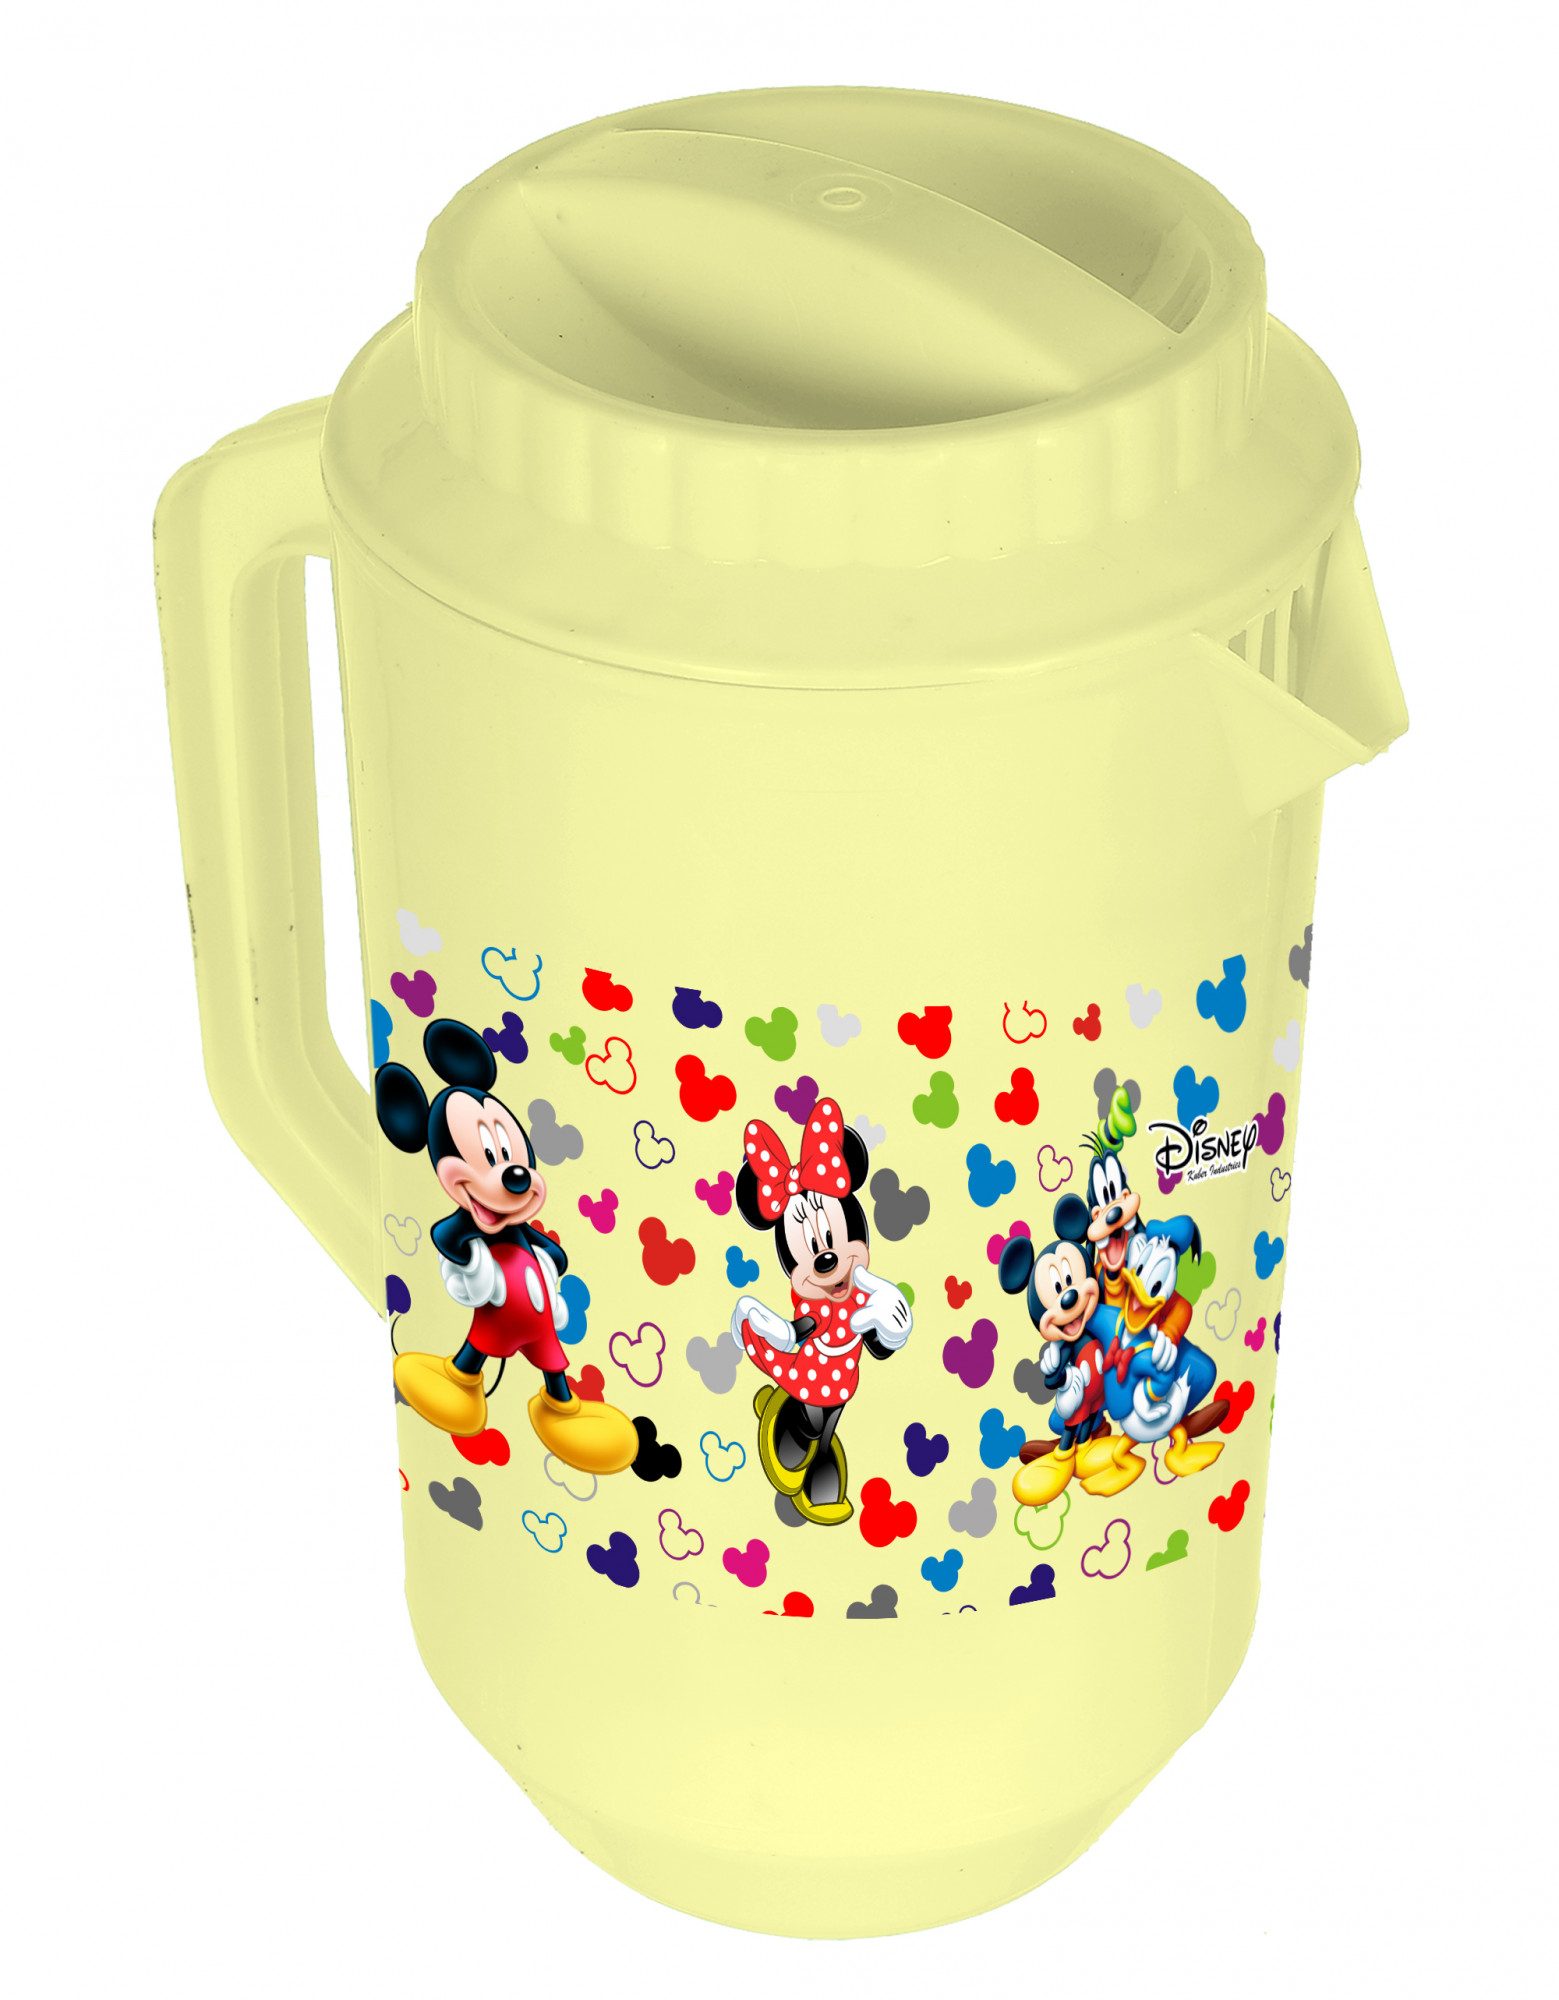 Kuber Industries Disney Team Mickey Print Unbreakable Multipurpose Plastic Water & Juice Jug With Lid,2 Ltr (Set Of 2, Cream & Black)